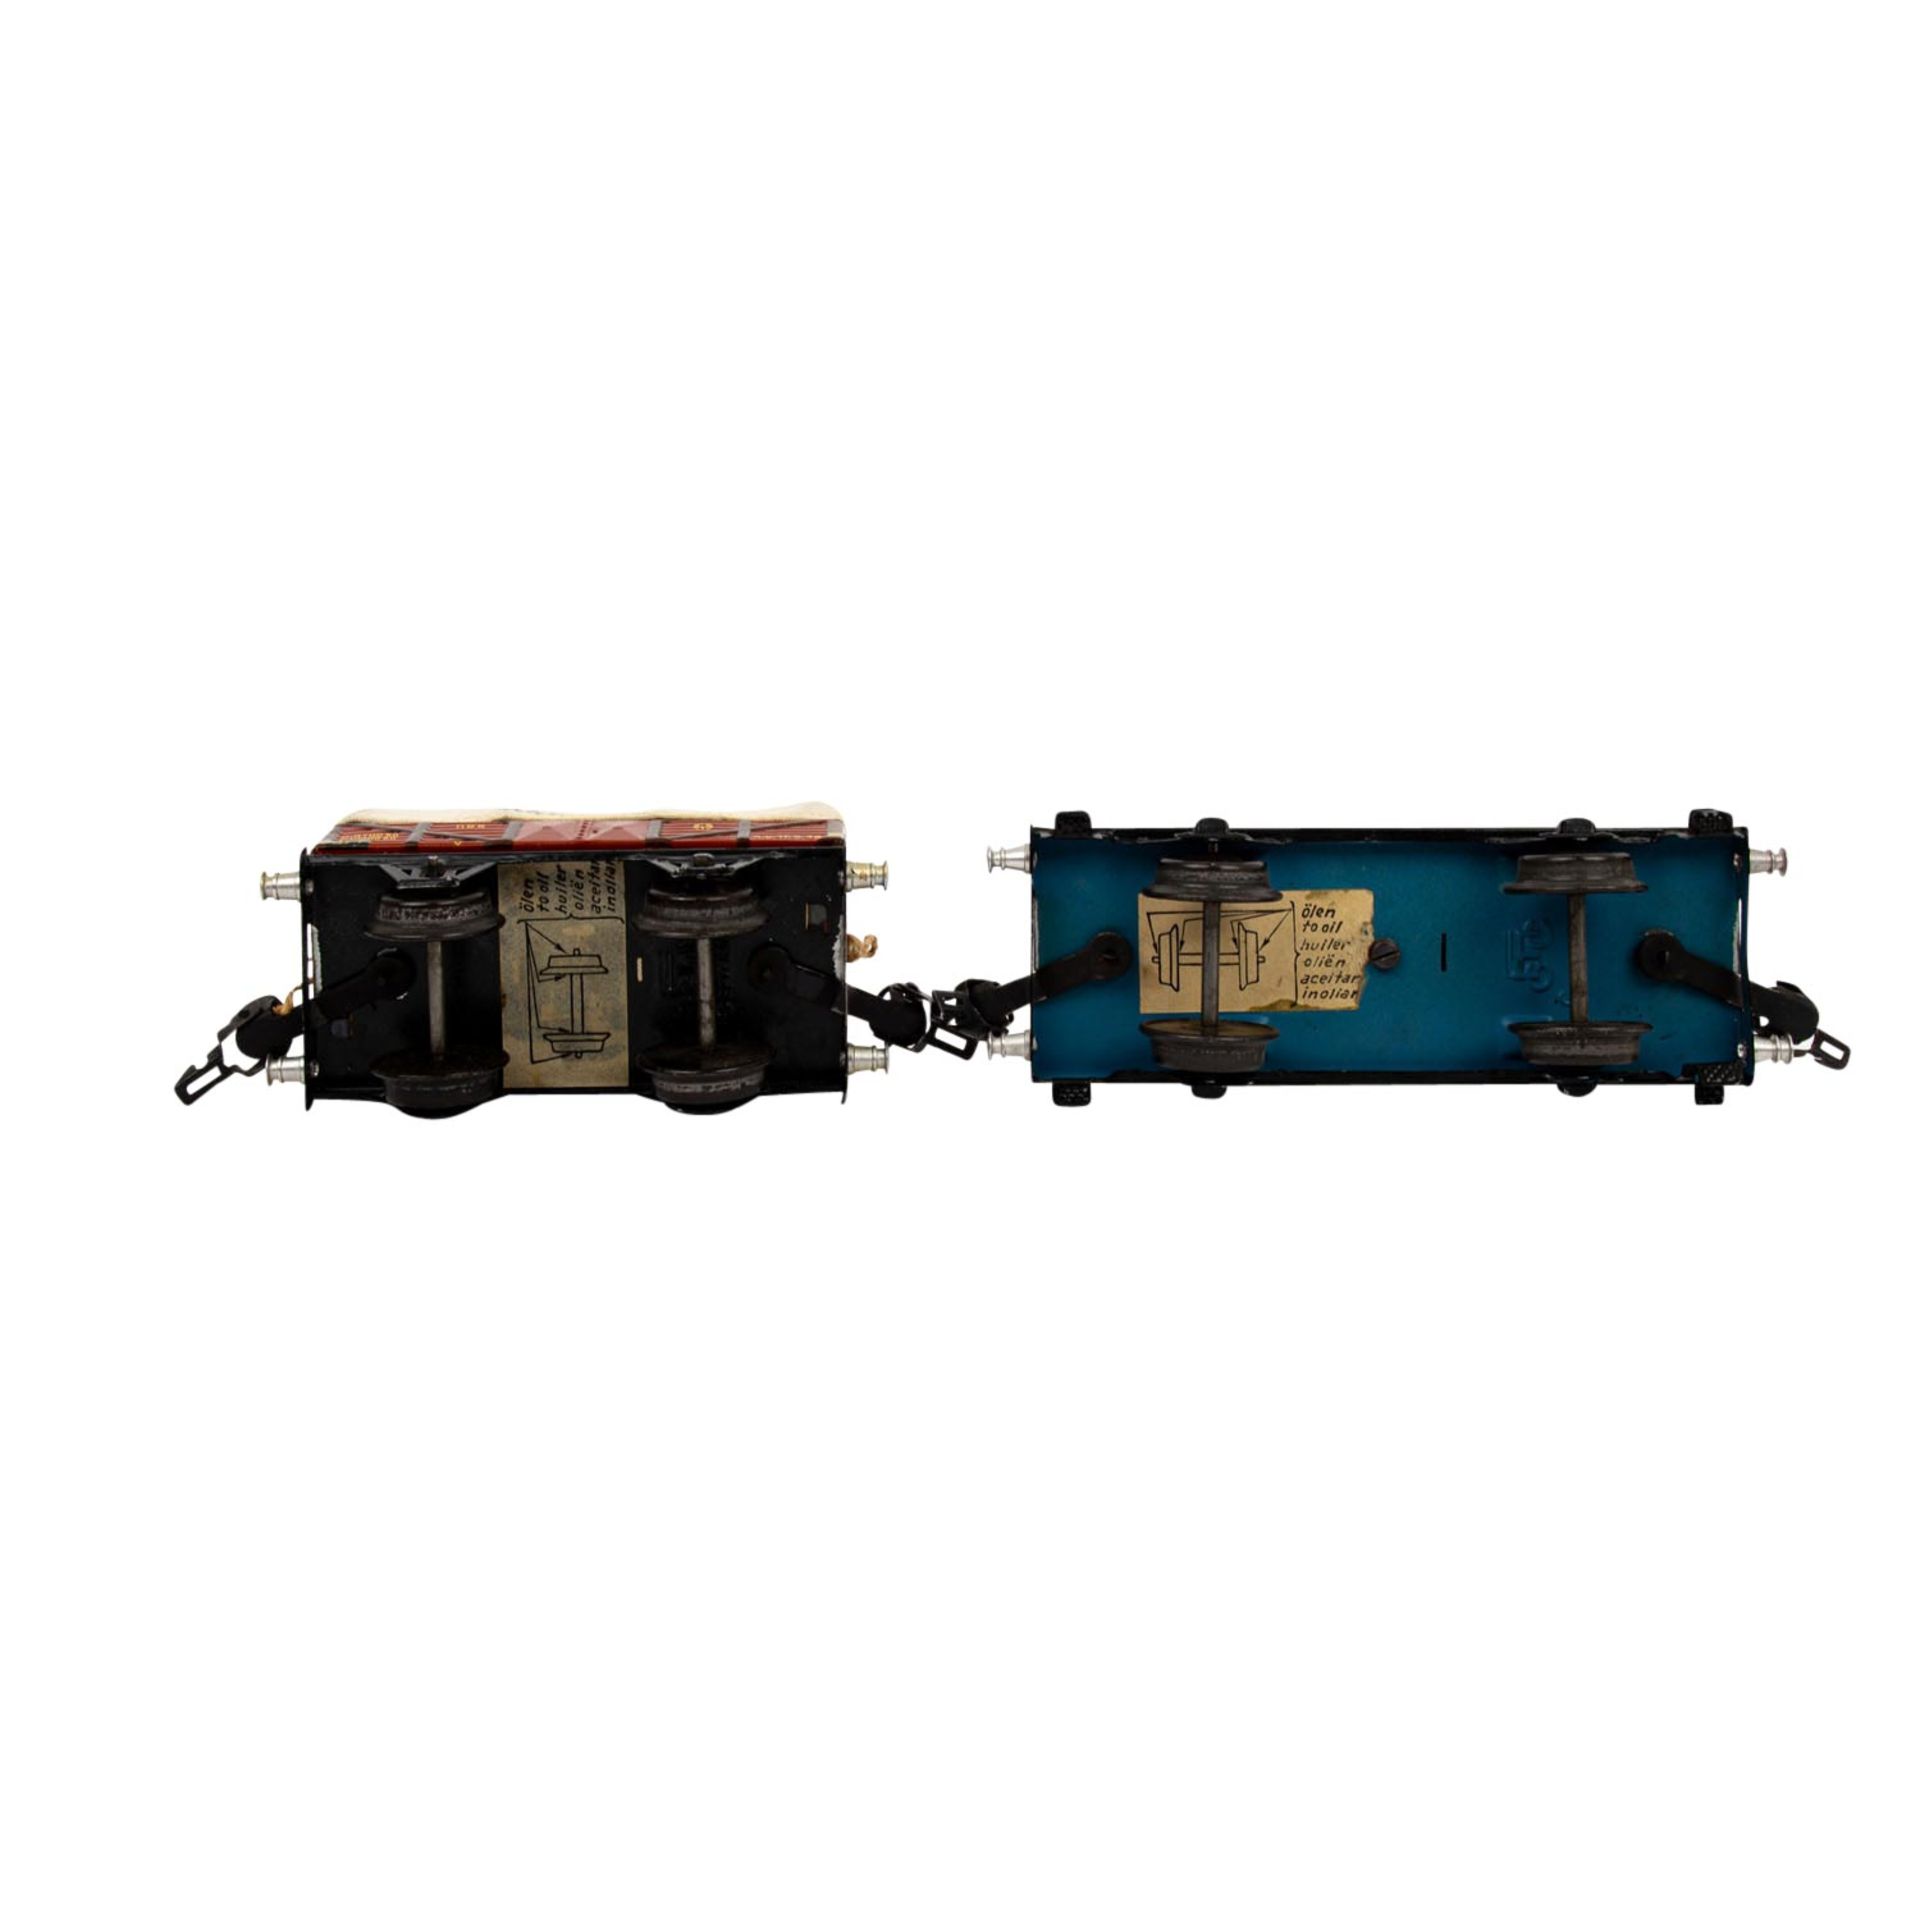 MÄRKLIN zwei Güterwagen, Spur 0, 1930er Jahre, bestehend aus Plattformwagen blau/sch - Image 6 of 7